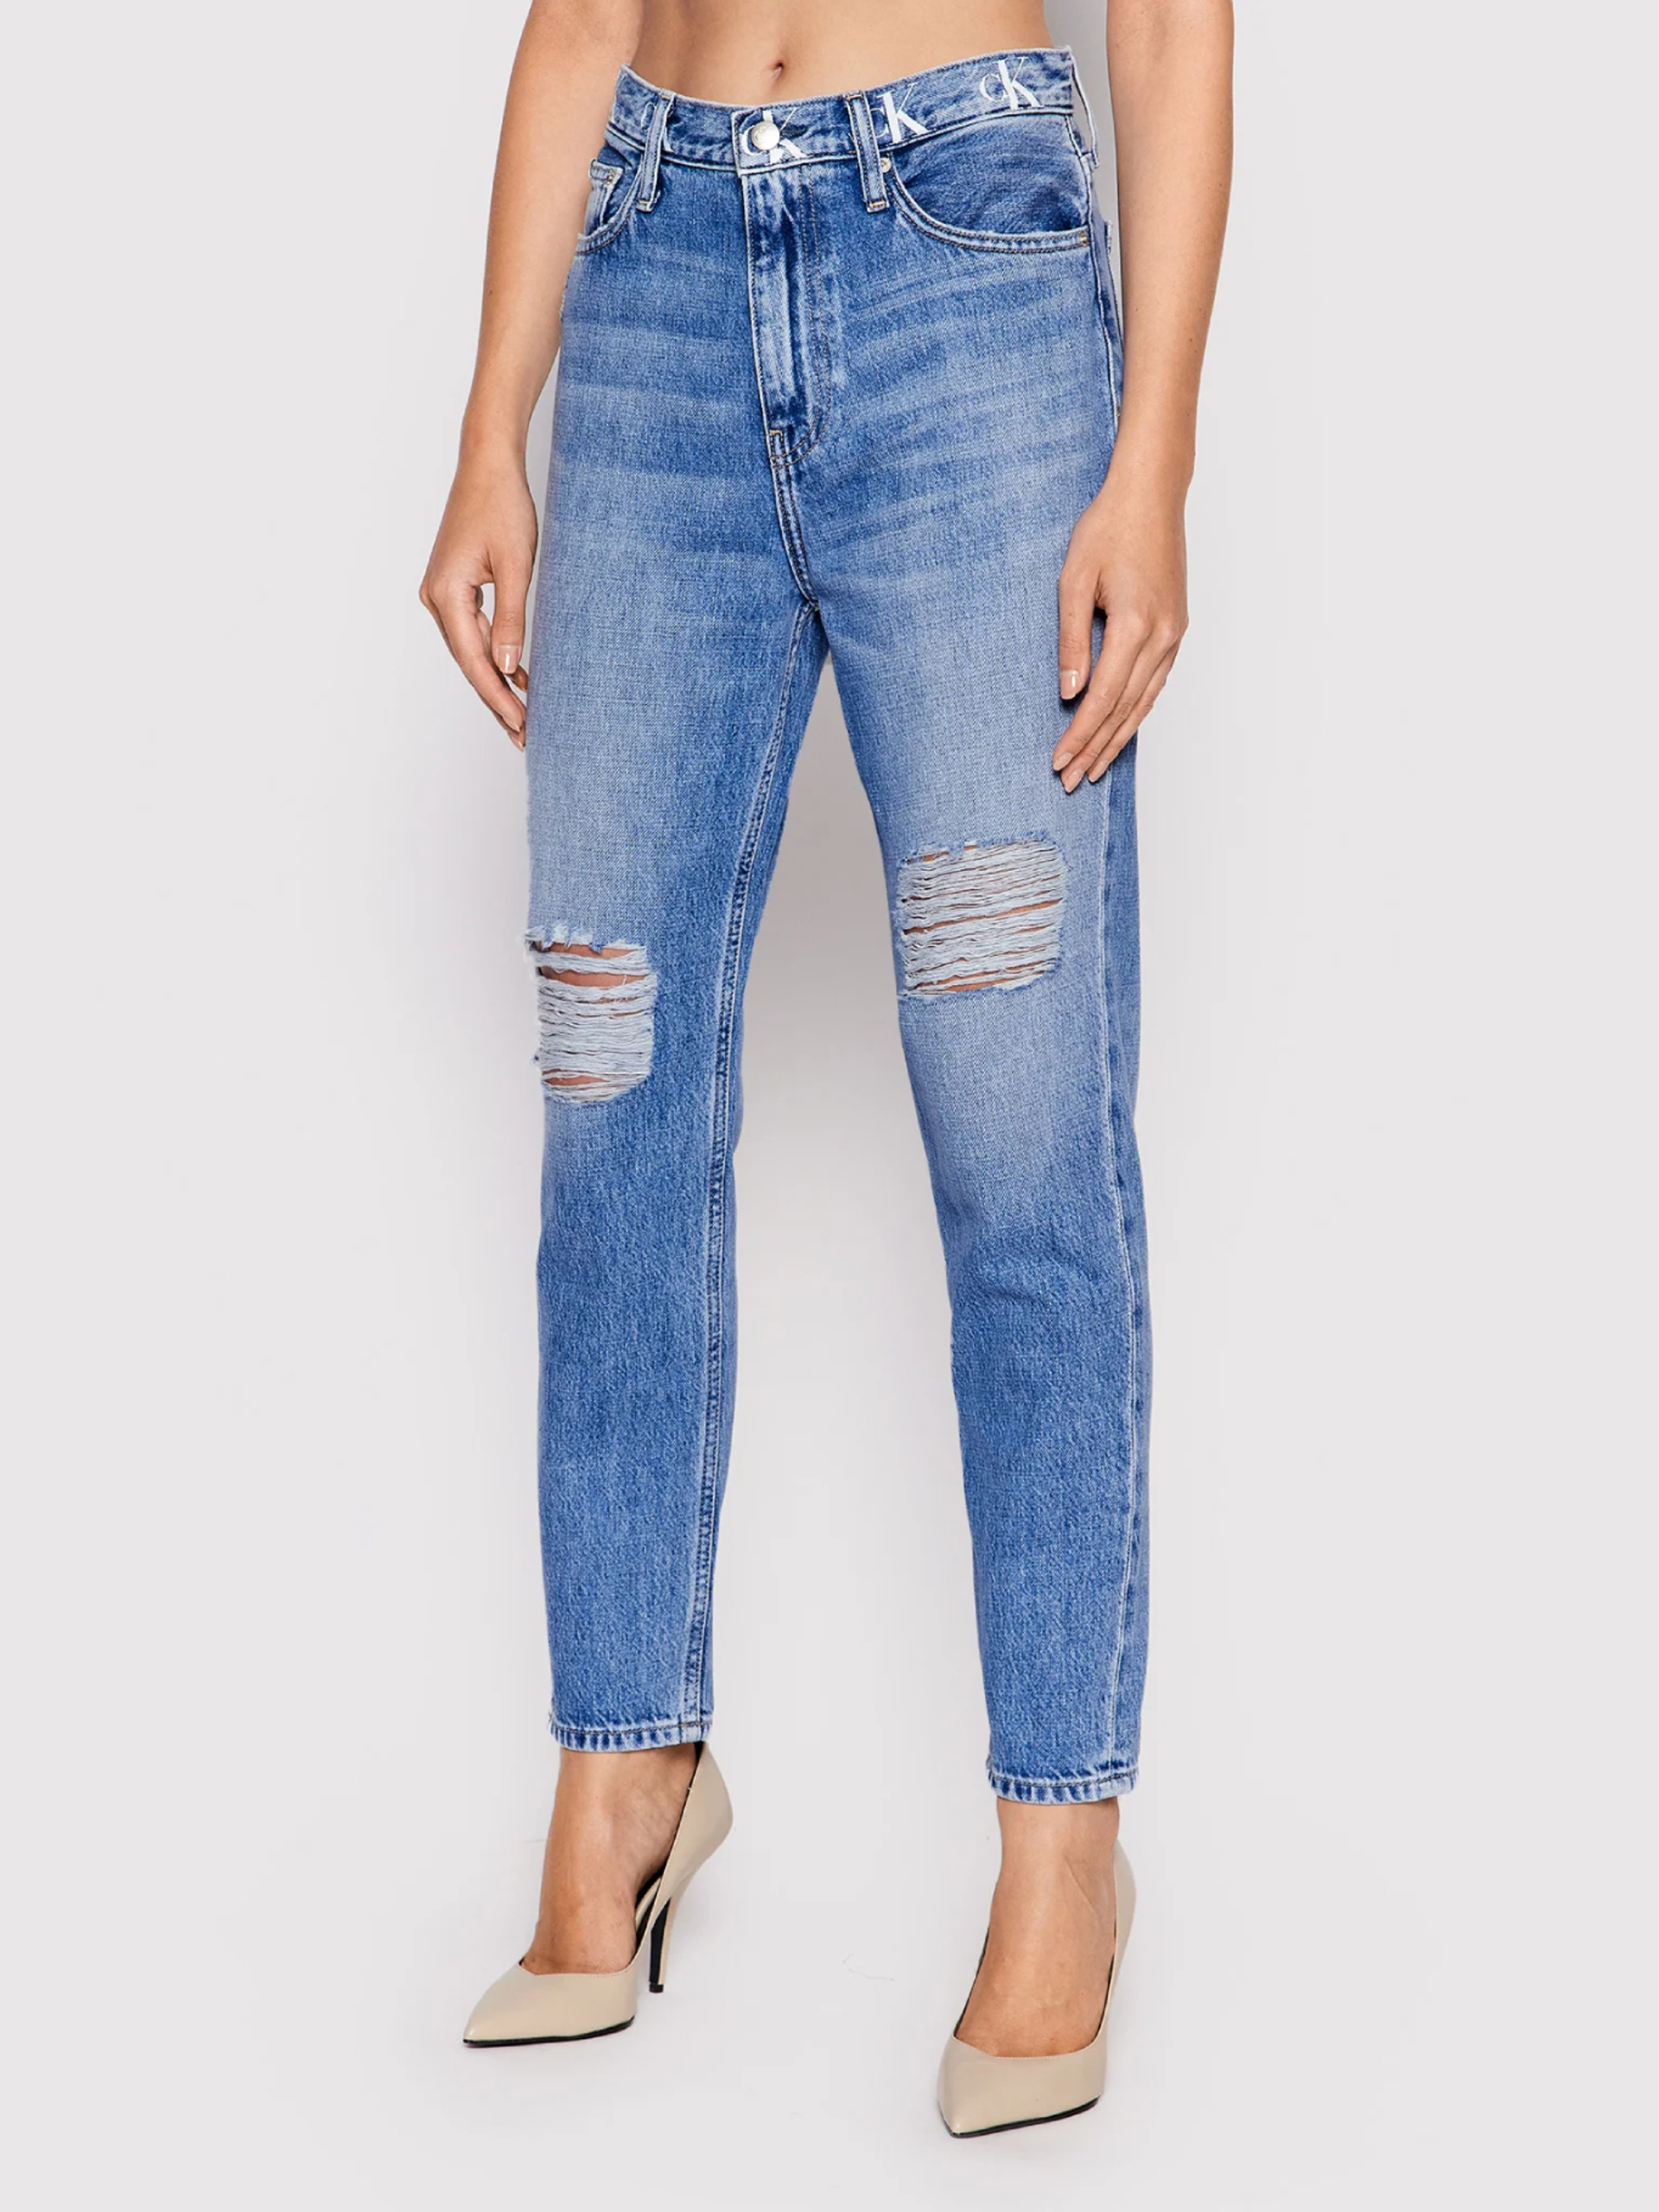 Calvin Klein dámske modré džínsy - 26/NI (1A4)